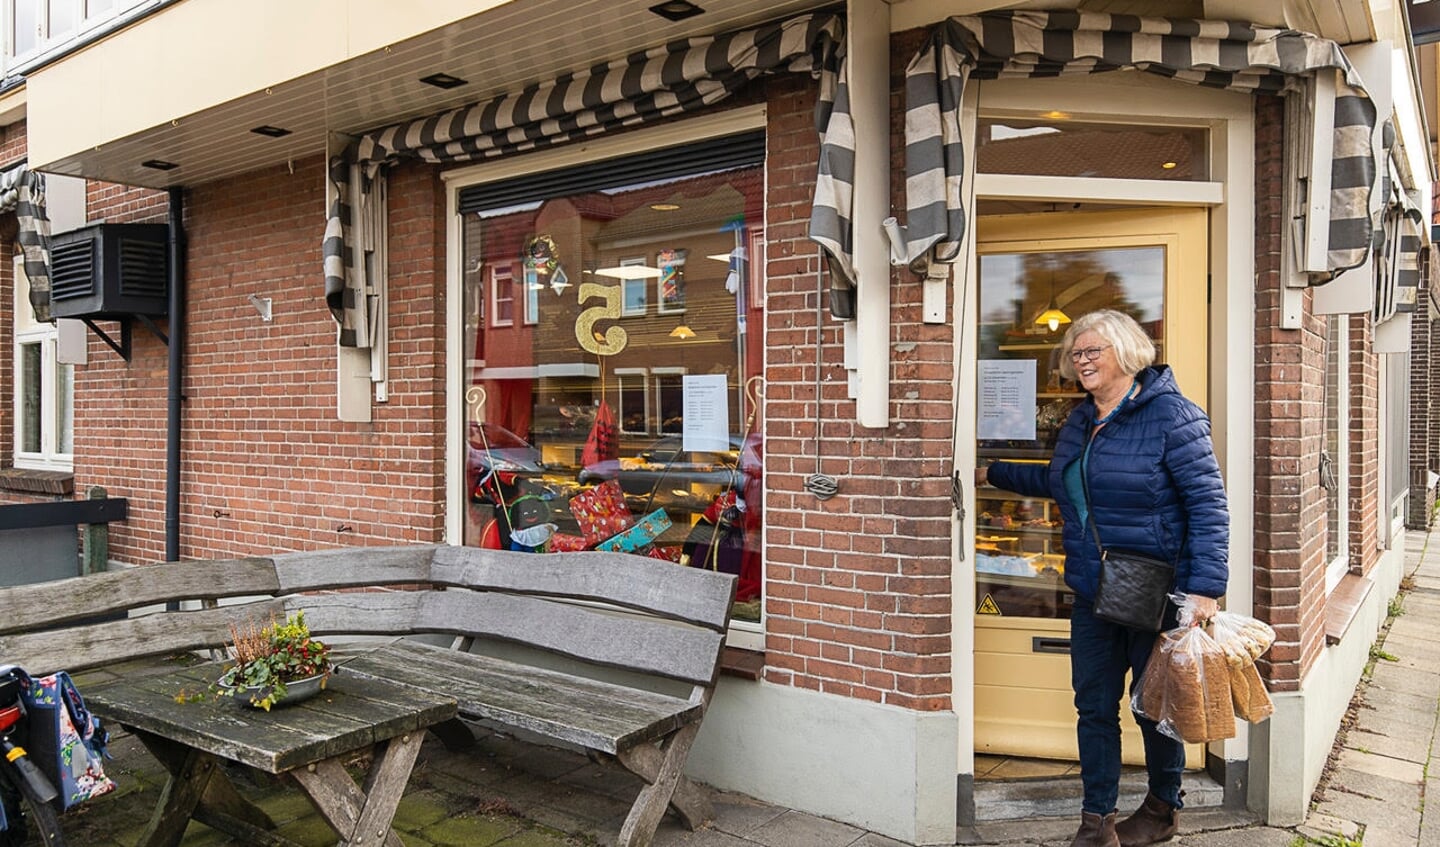 De bakkerswinkel zal door buurtbewoners gemist worden